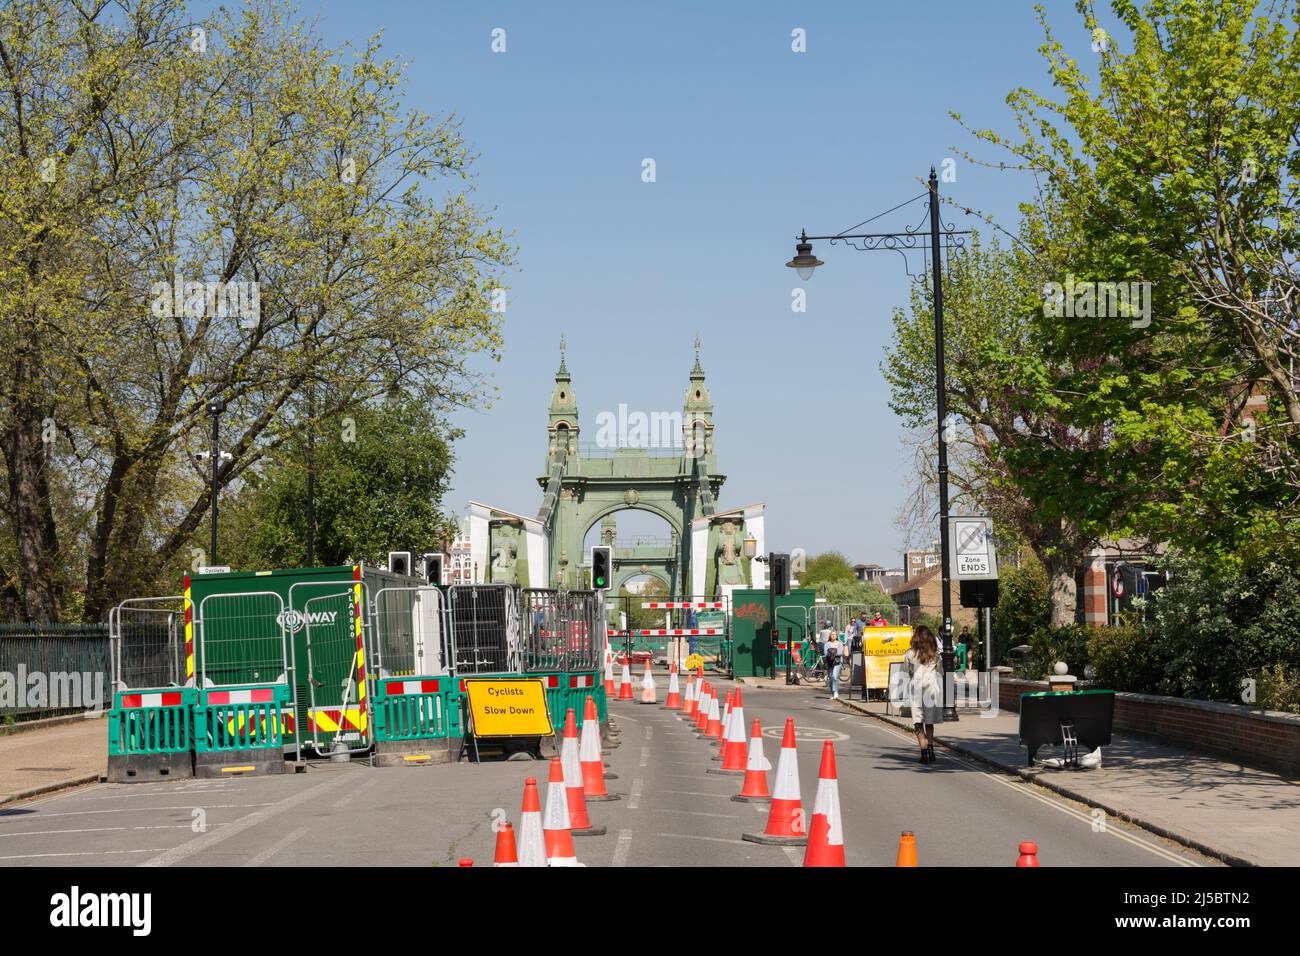 Bolardos que dirigen a los ciclistas a través del puente Hammersmith, que ha estado cerrado por tráfico durante más de 2 años por motivos de seguridad Foto de stock